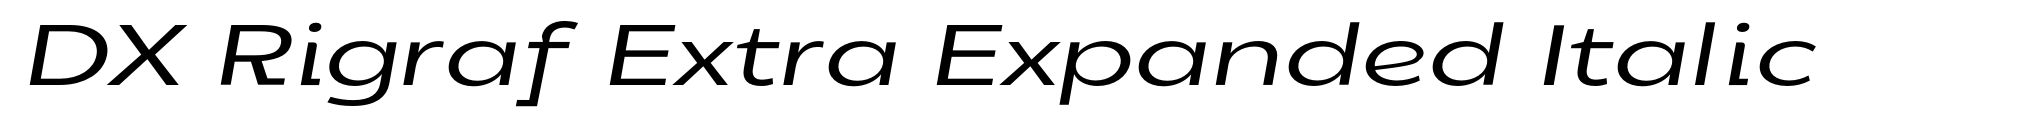 DX Rigraf Extra Expanded Italic image